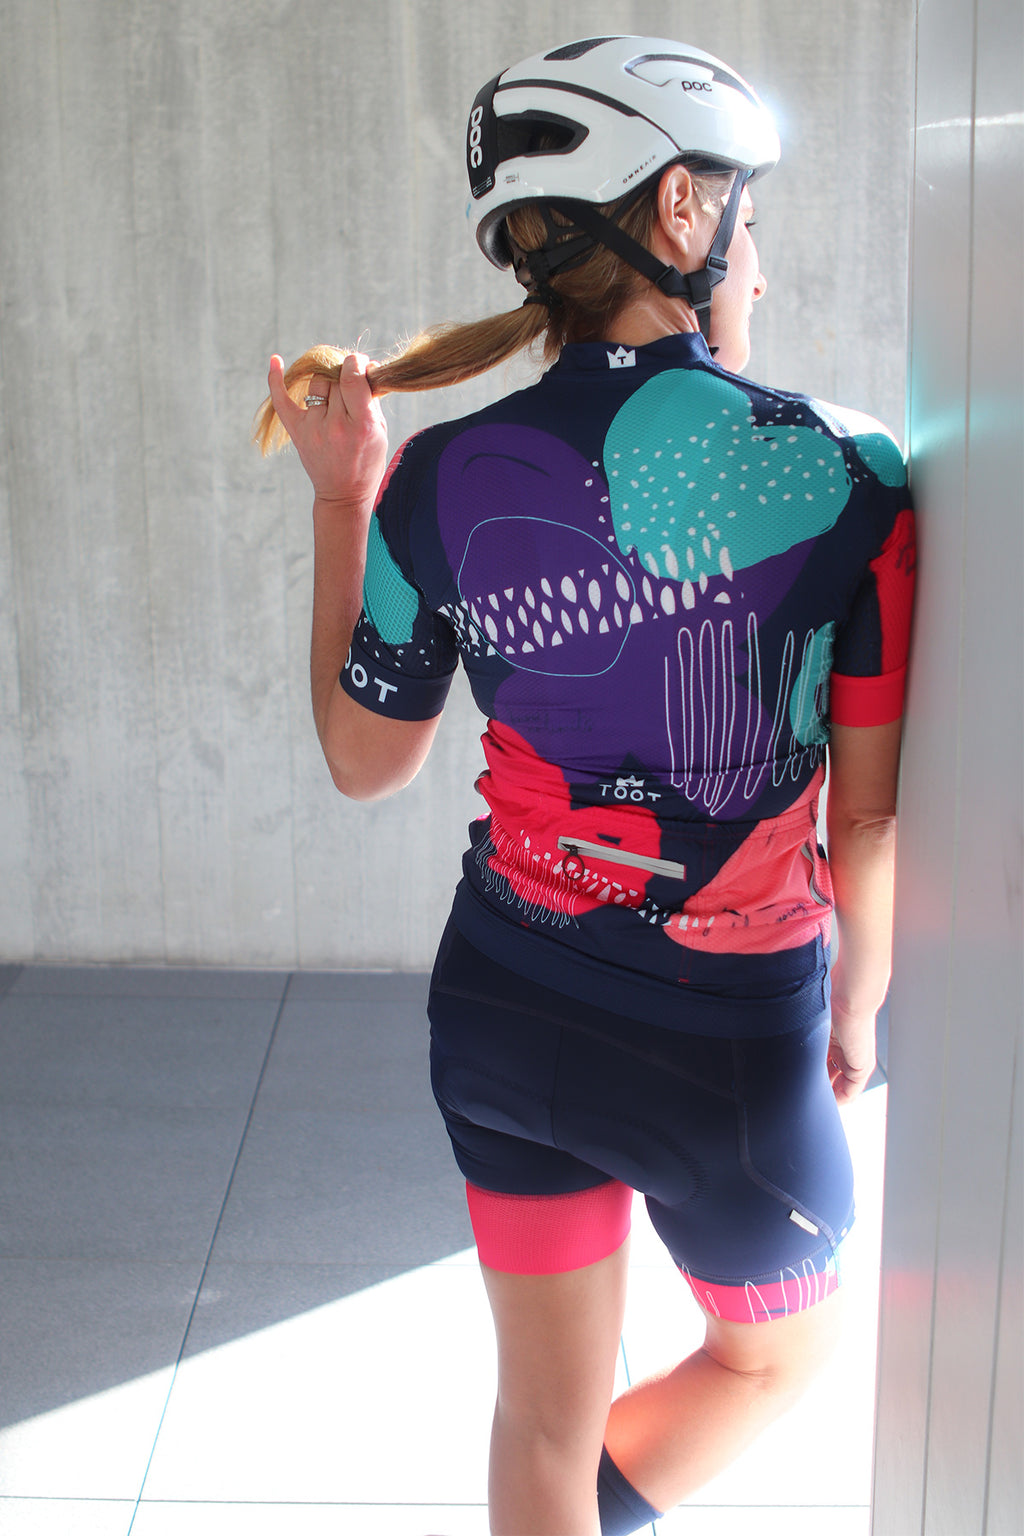 The Britt Kit TOOT Kit Cycling Clothing